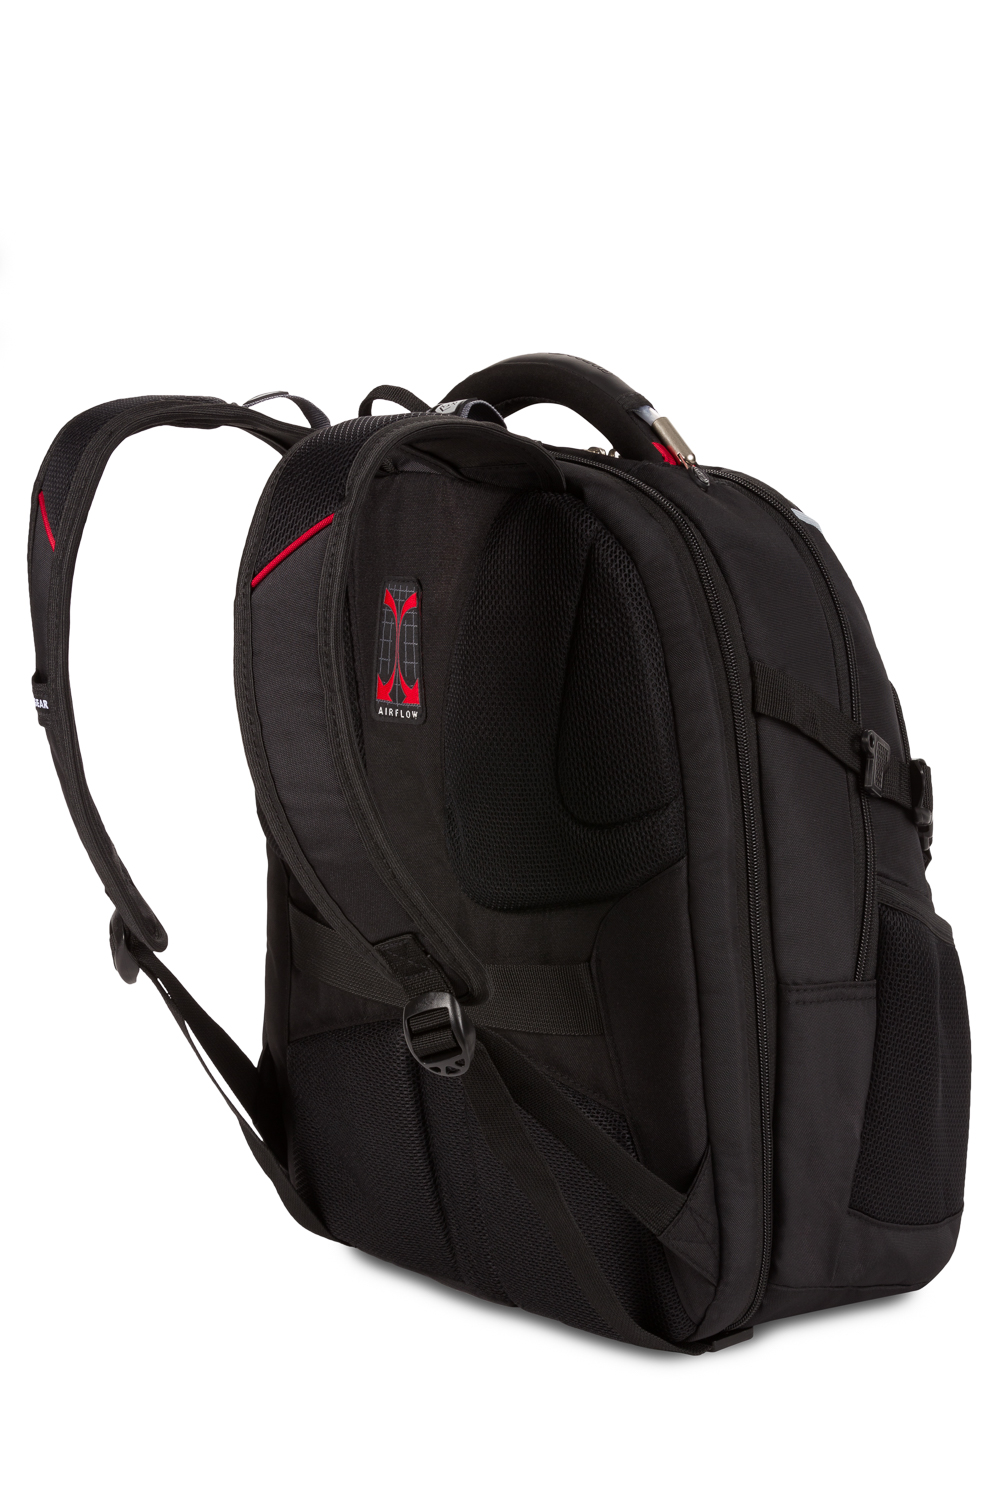 Swissgear 6752 ScanSmart Laptop Backpack - Black